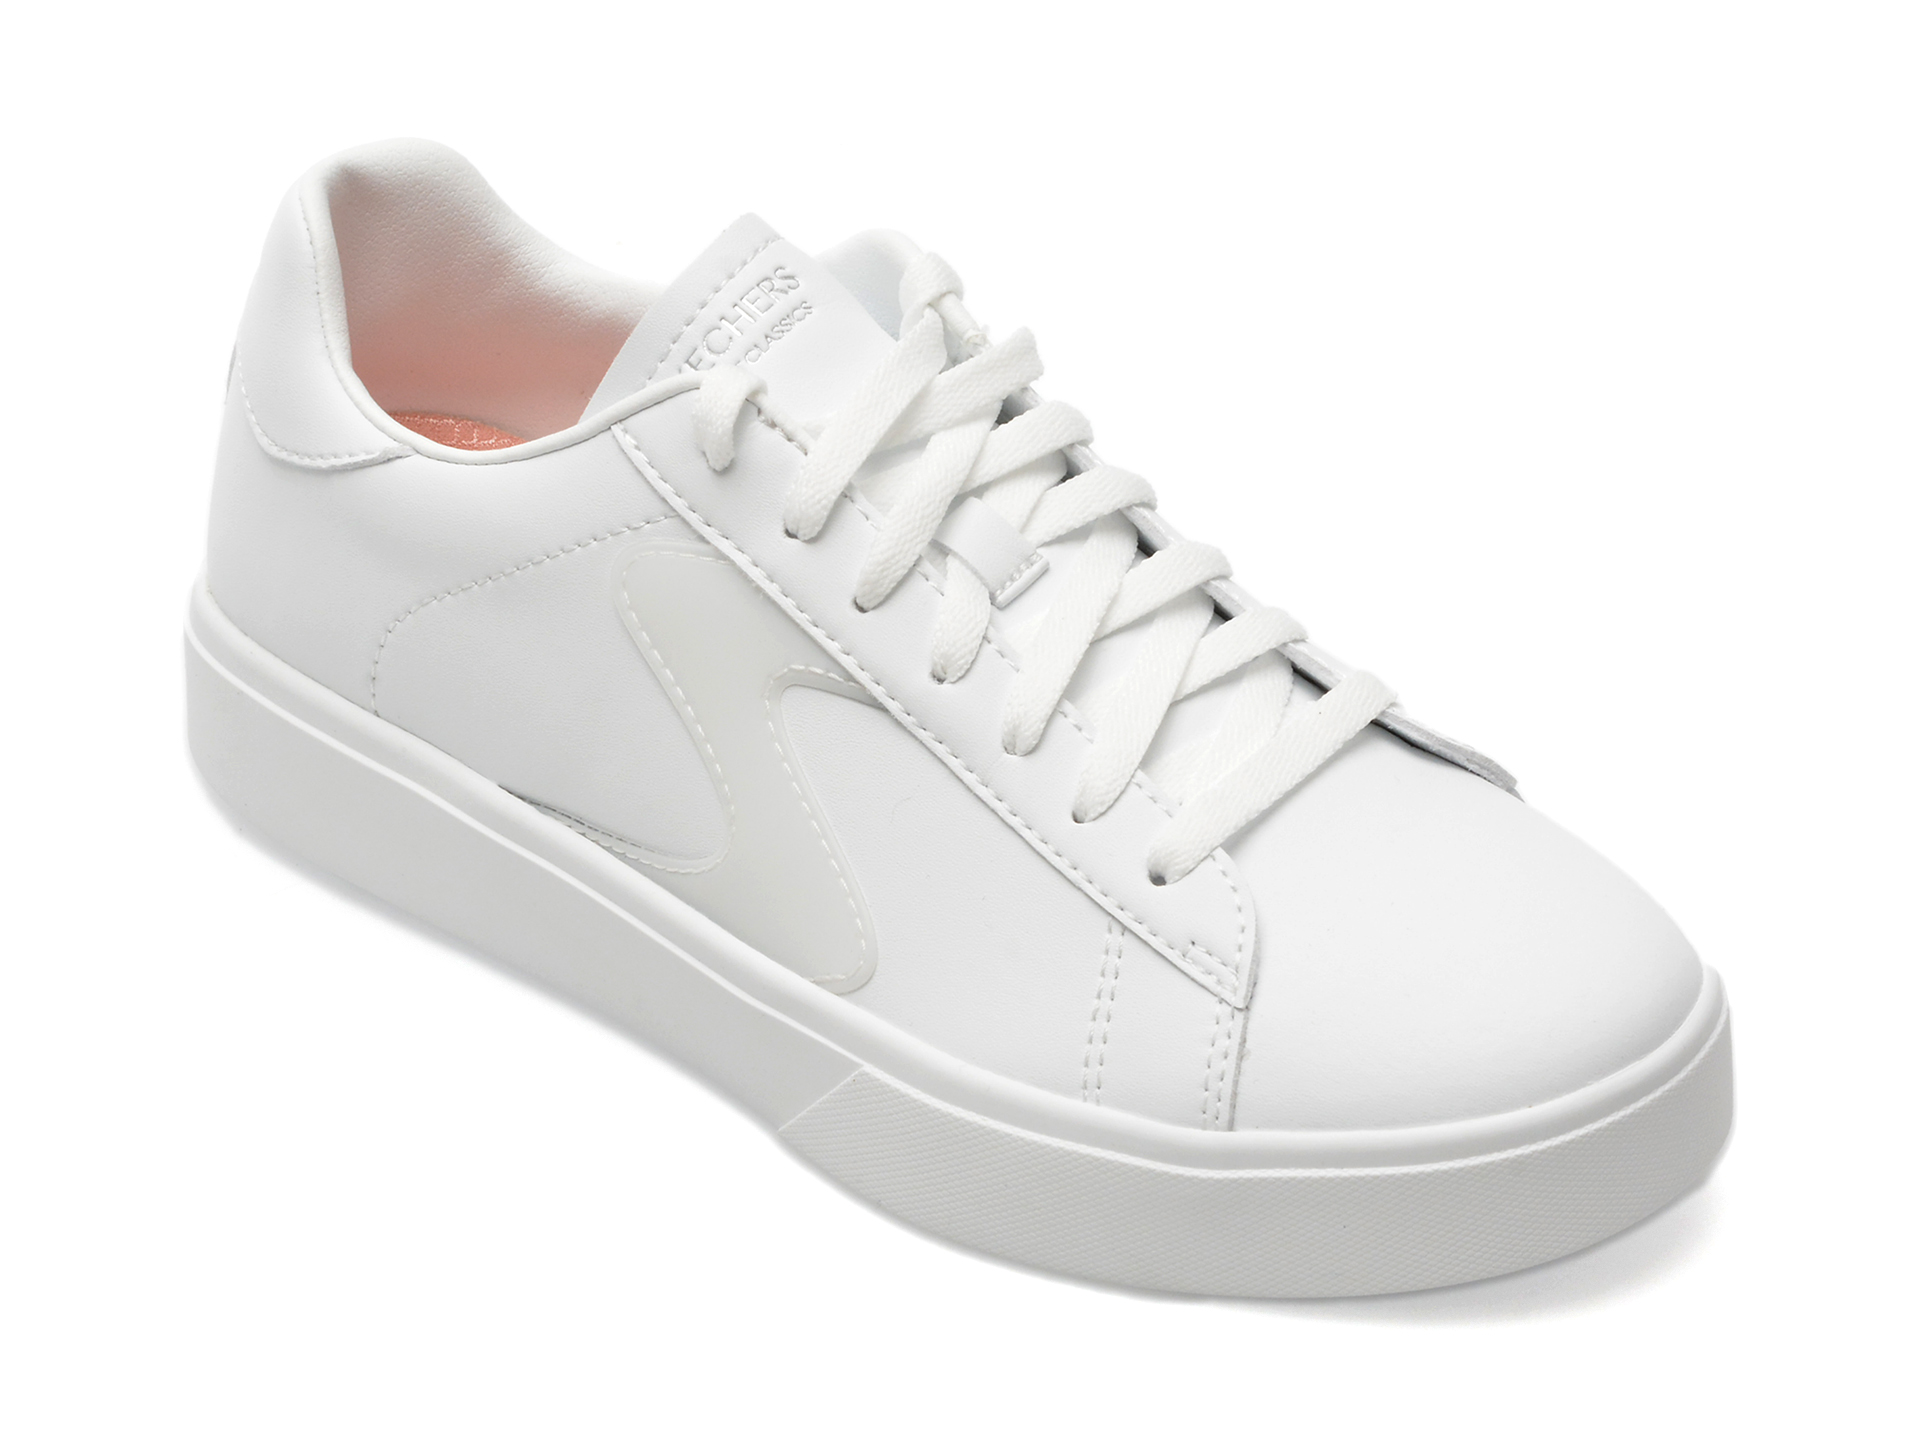 Pantofi SKECHERS albi, EDEN LX, din piele ecologica femei 2023-09-21